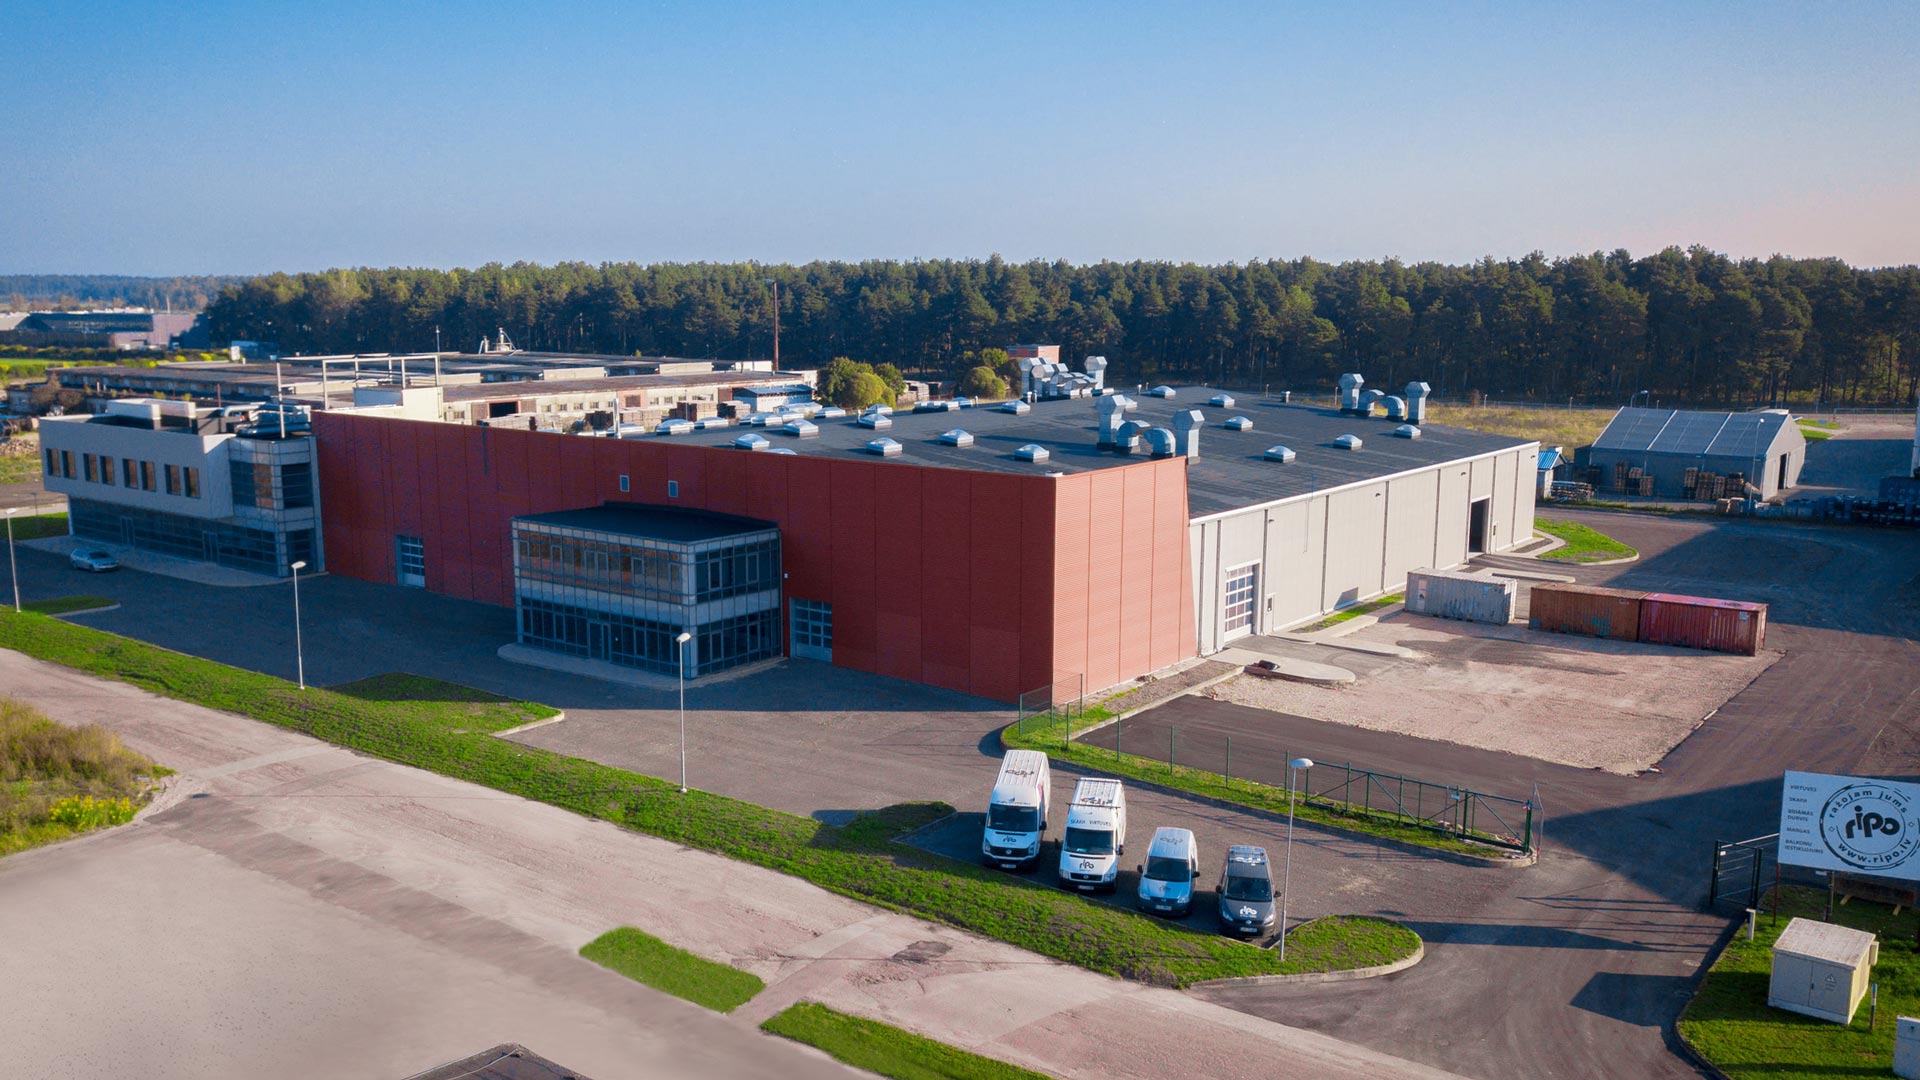 RIPO fabrika jaunais ražošanas komplekss